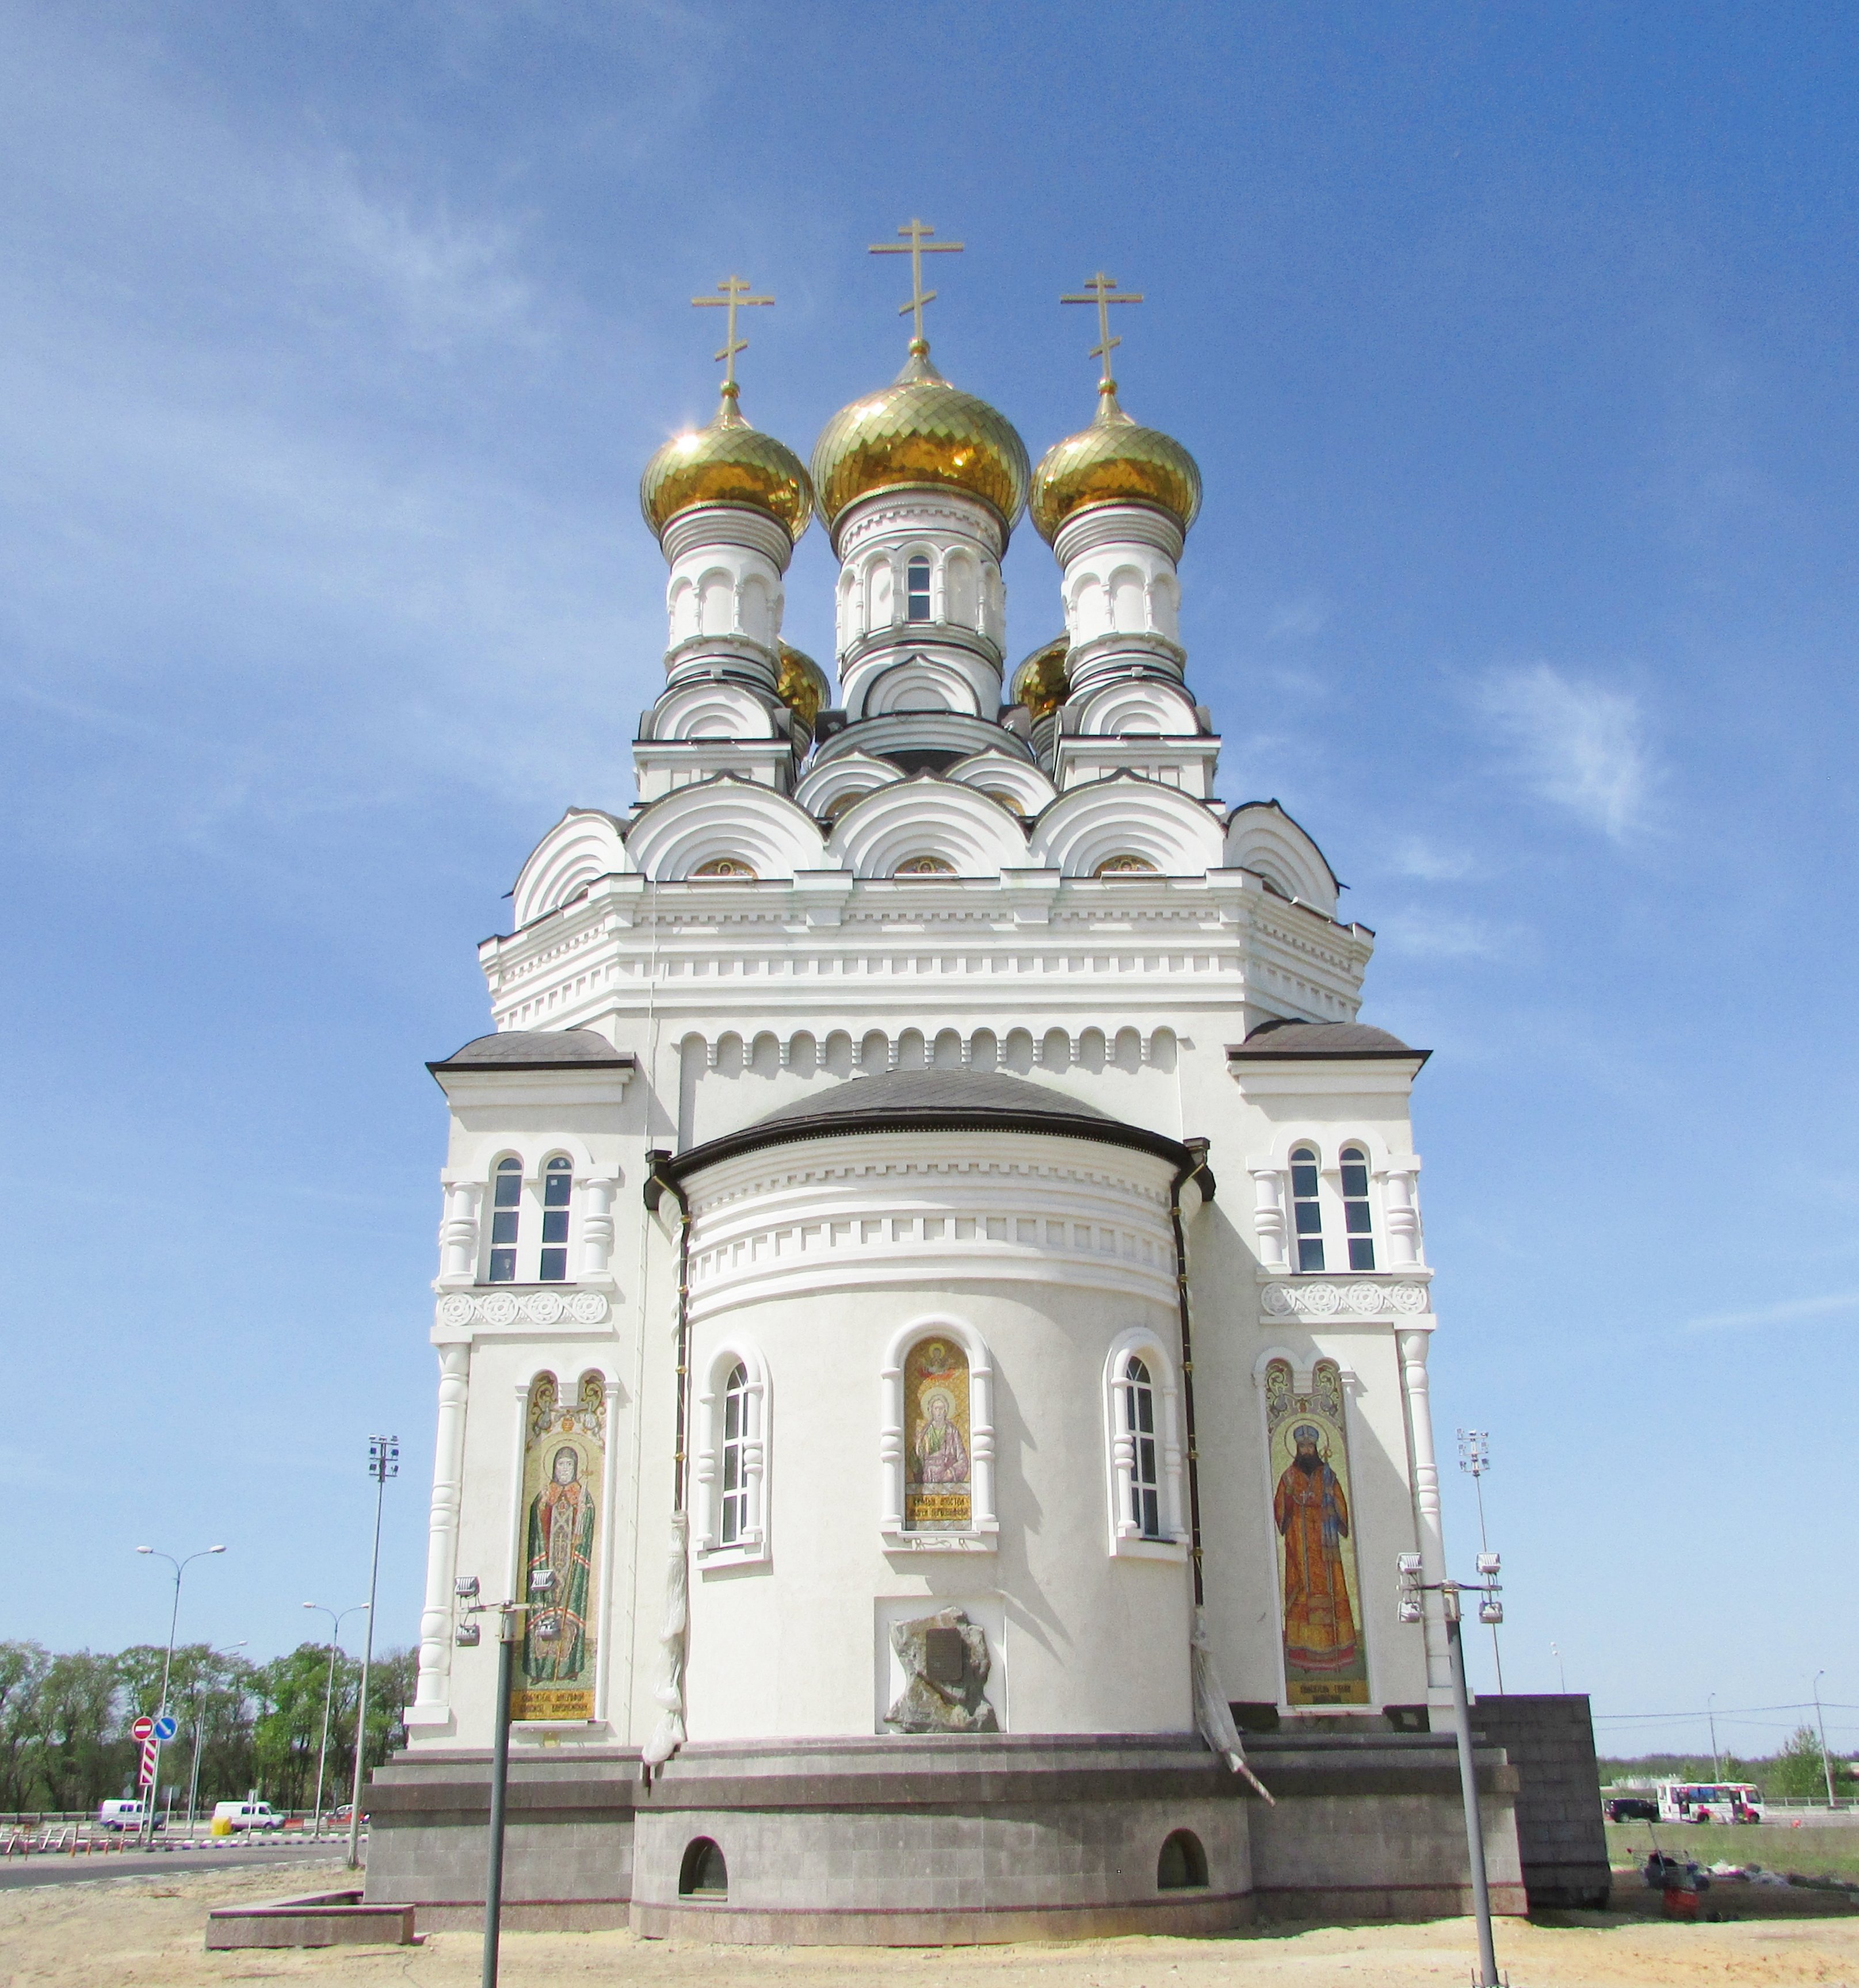 Храм Петра и Февронии в Донецке